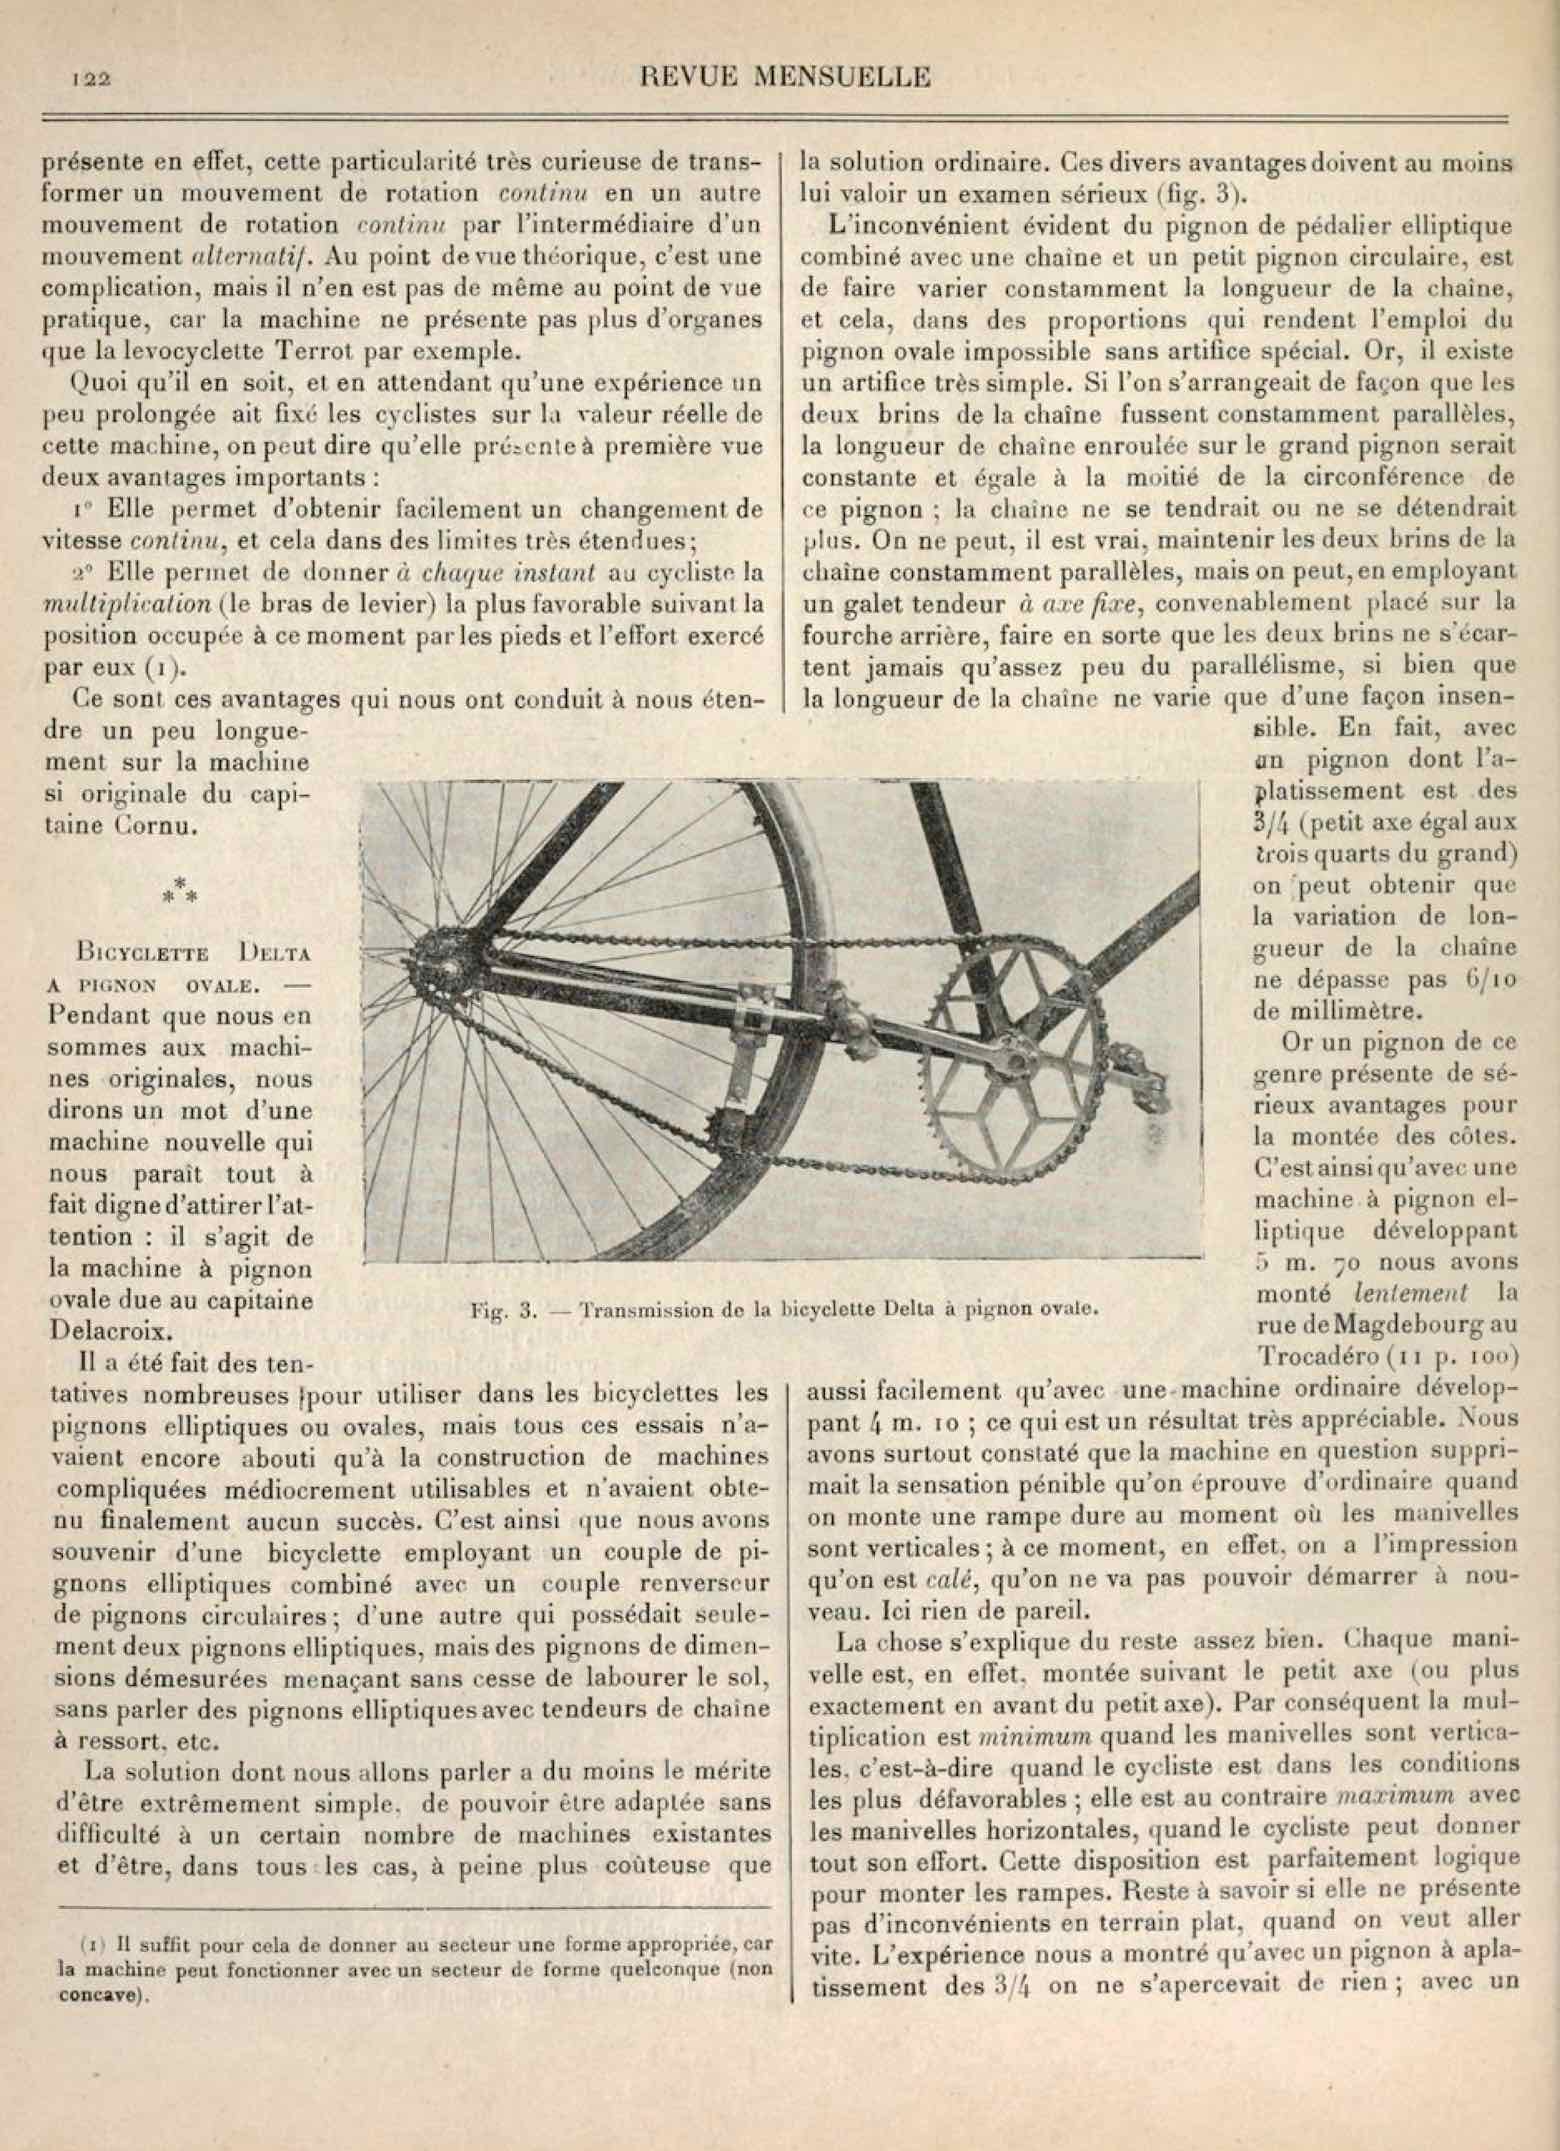 T.C.F. Revue Mensuelle March 1906 - Le Salon cycliste de 1905 (part II) scan 3 main image